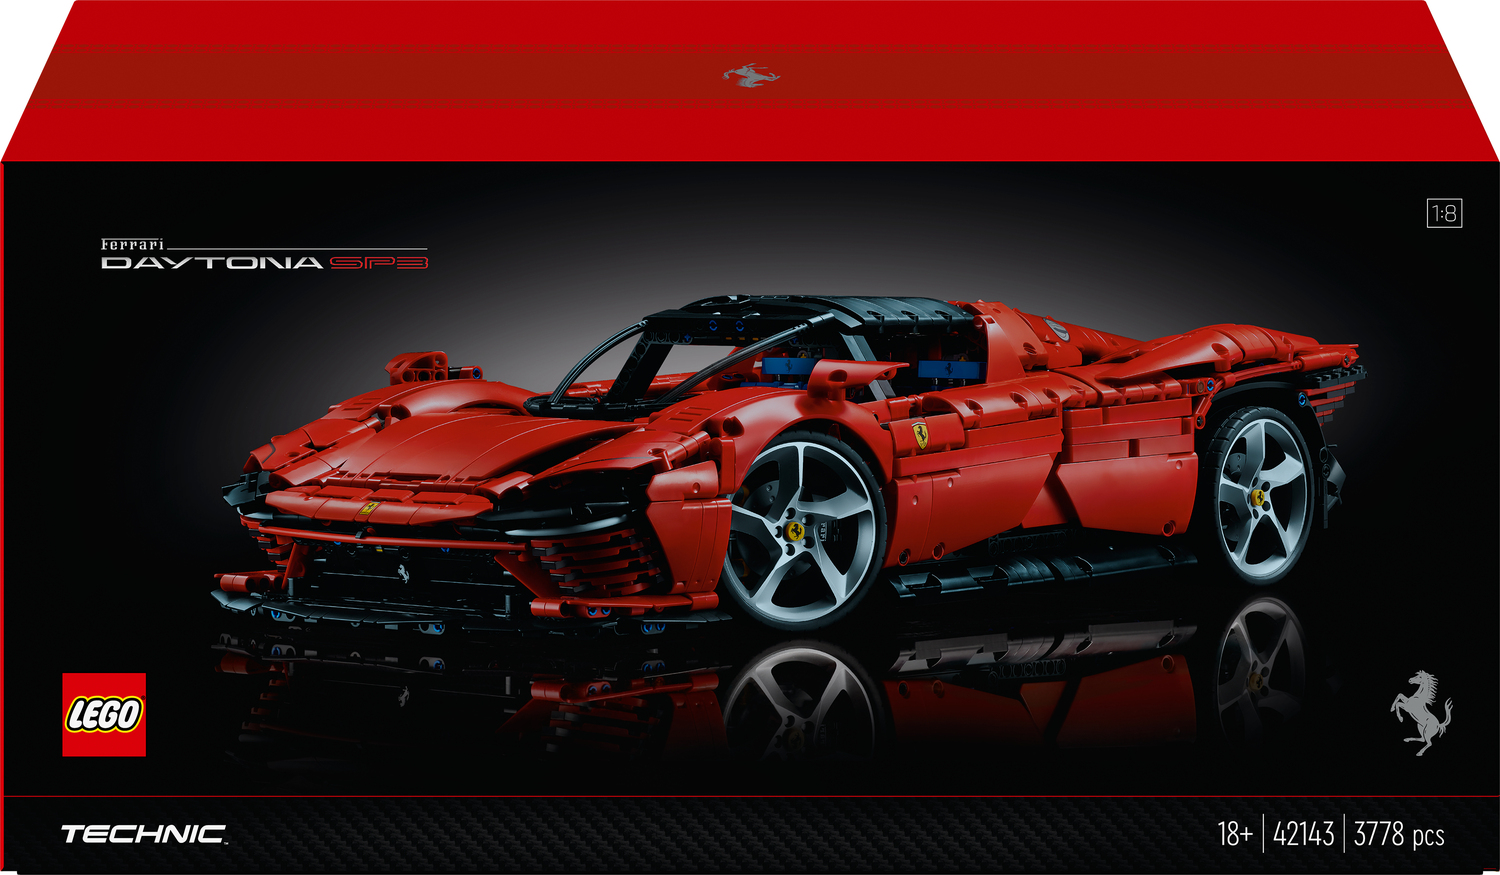 prosa Guggenheim Museum Højttaler LEGO Technic Ferrari Daytona SP3 Model Car Set - Imagine That Toys